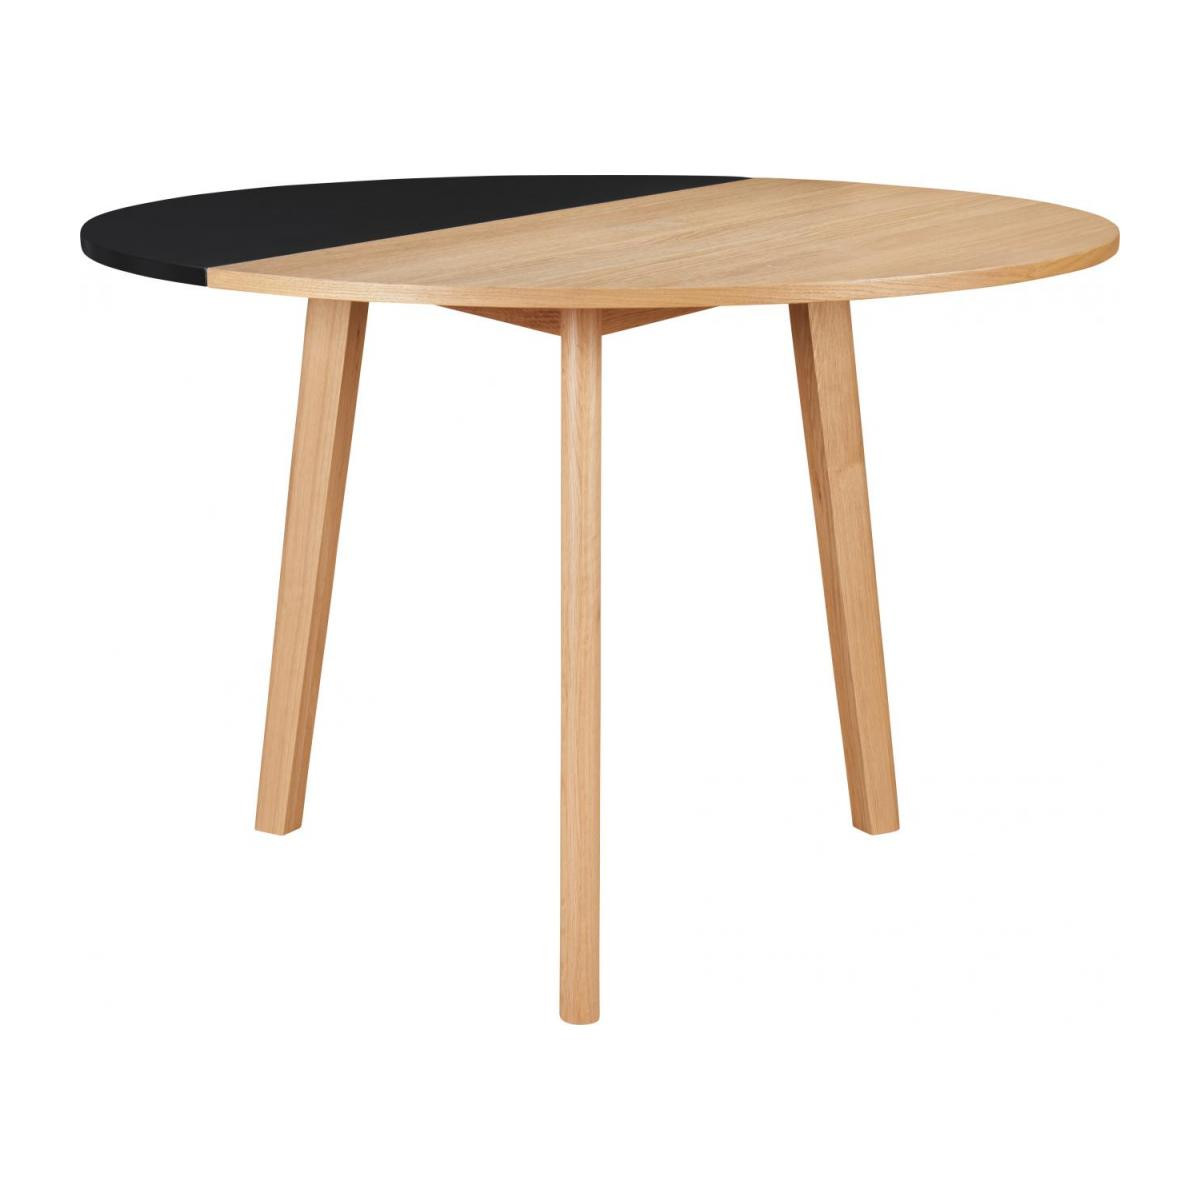 Tisch Klappbar
 Pivot Tisch klappbar aus Eiche und schwarz Design by